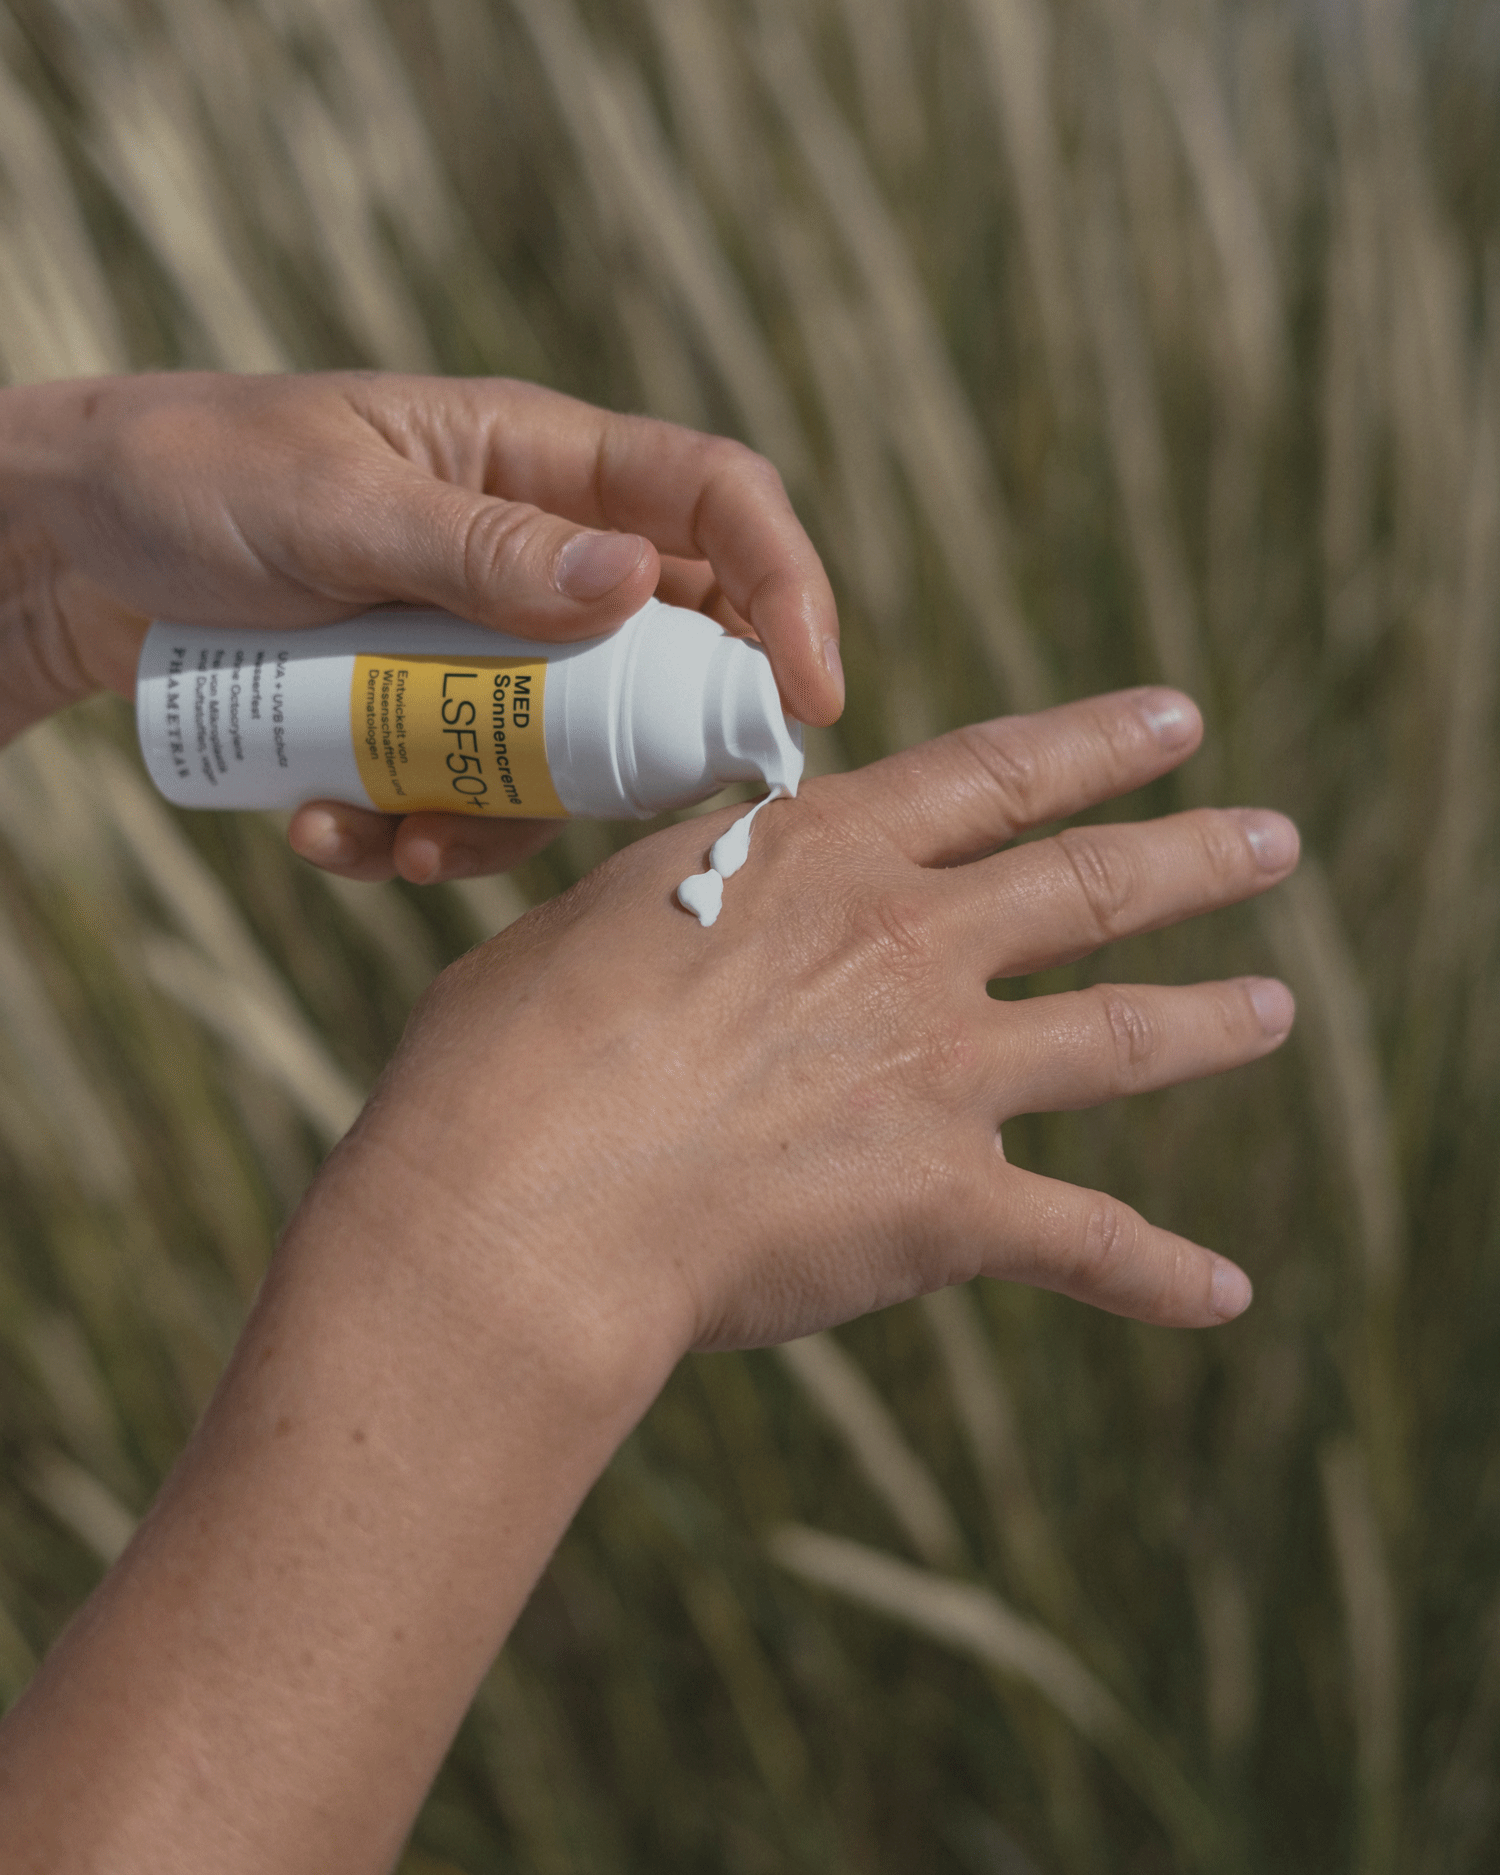 Eine Hand gibt Sonnencreme im weiß gelben Spender von Phametra auf einen anderen Handrücken. Im Hintergrund ist Farn zu sehen.